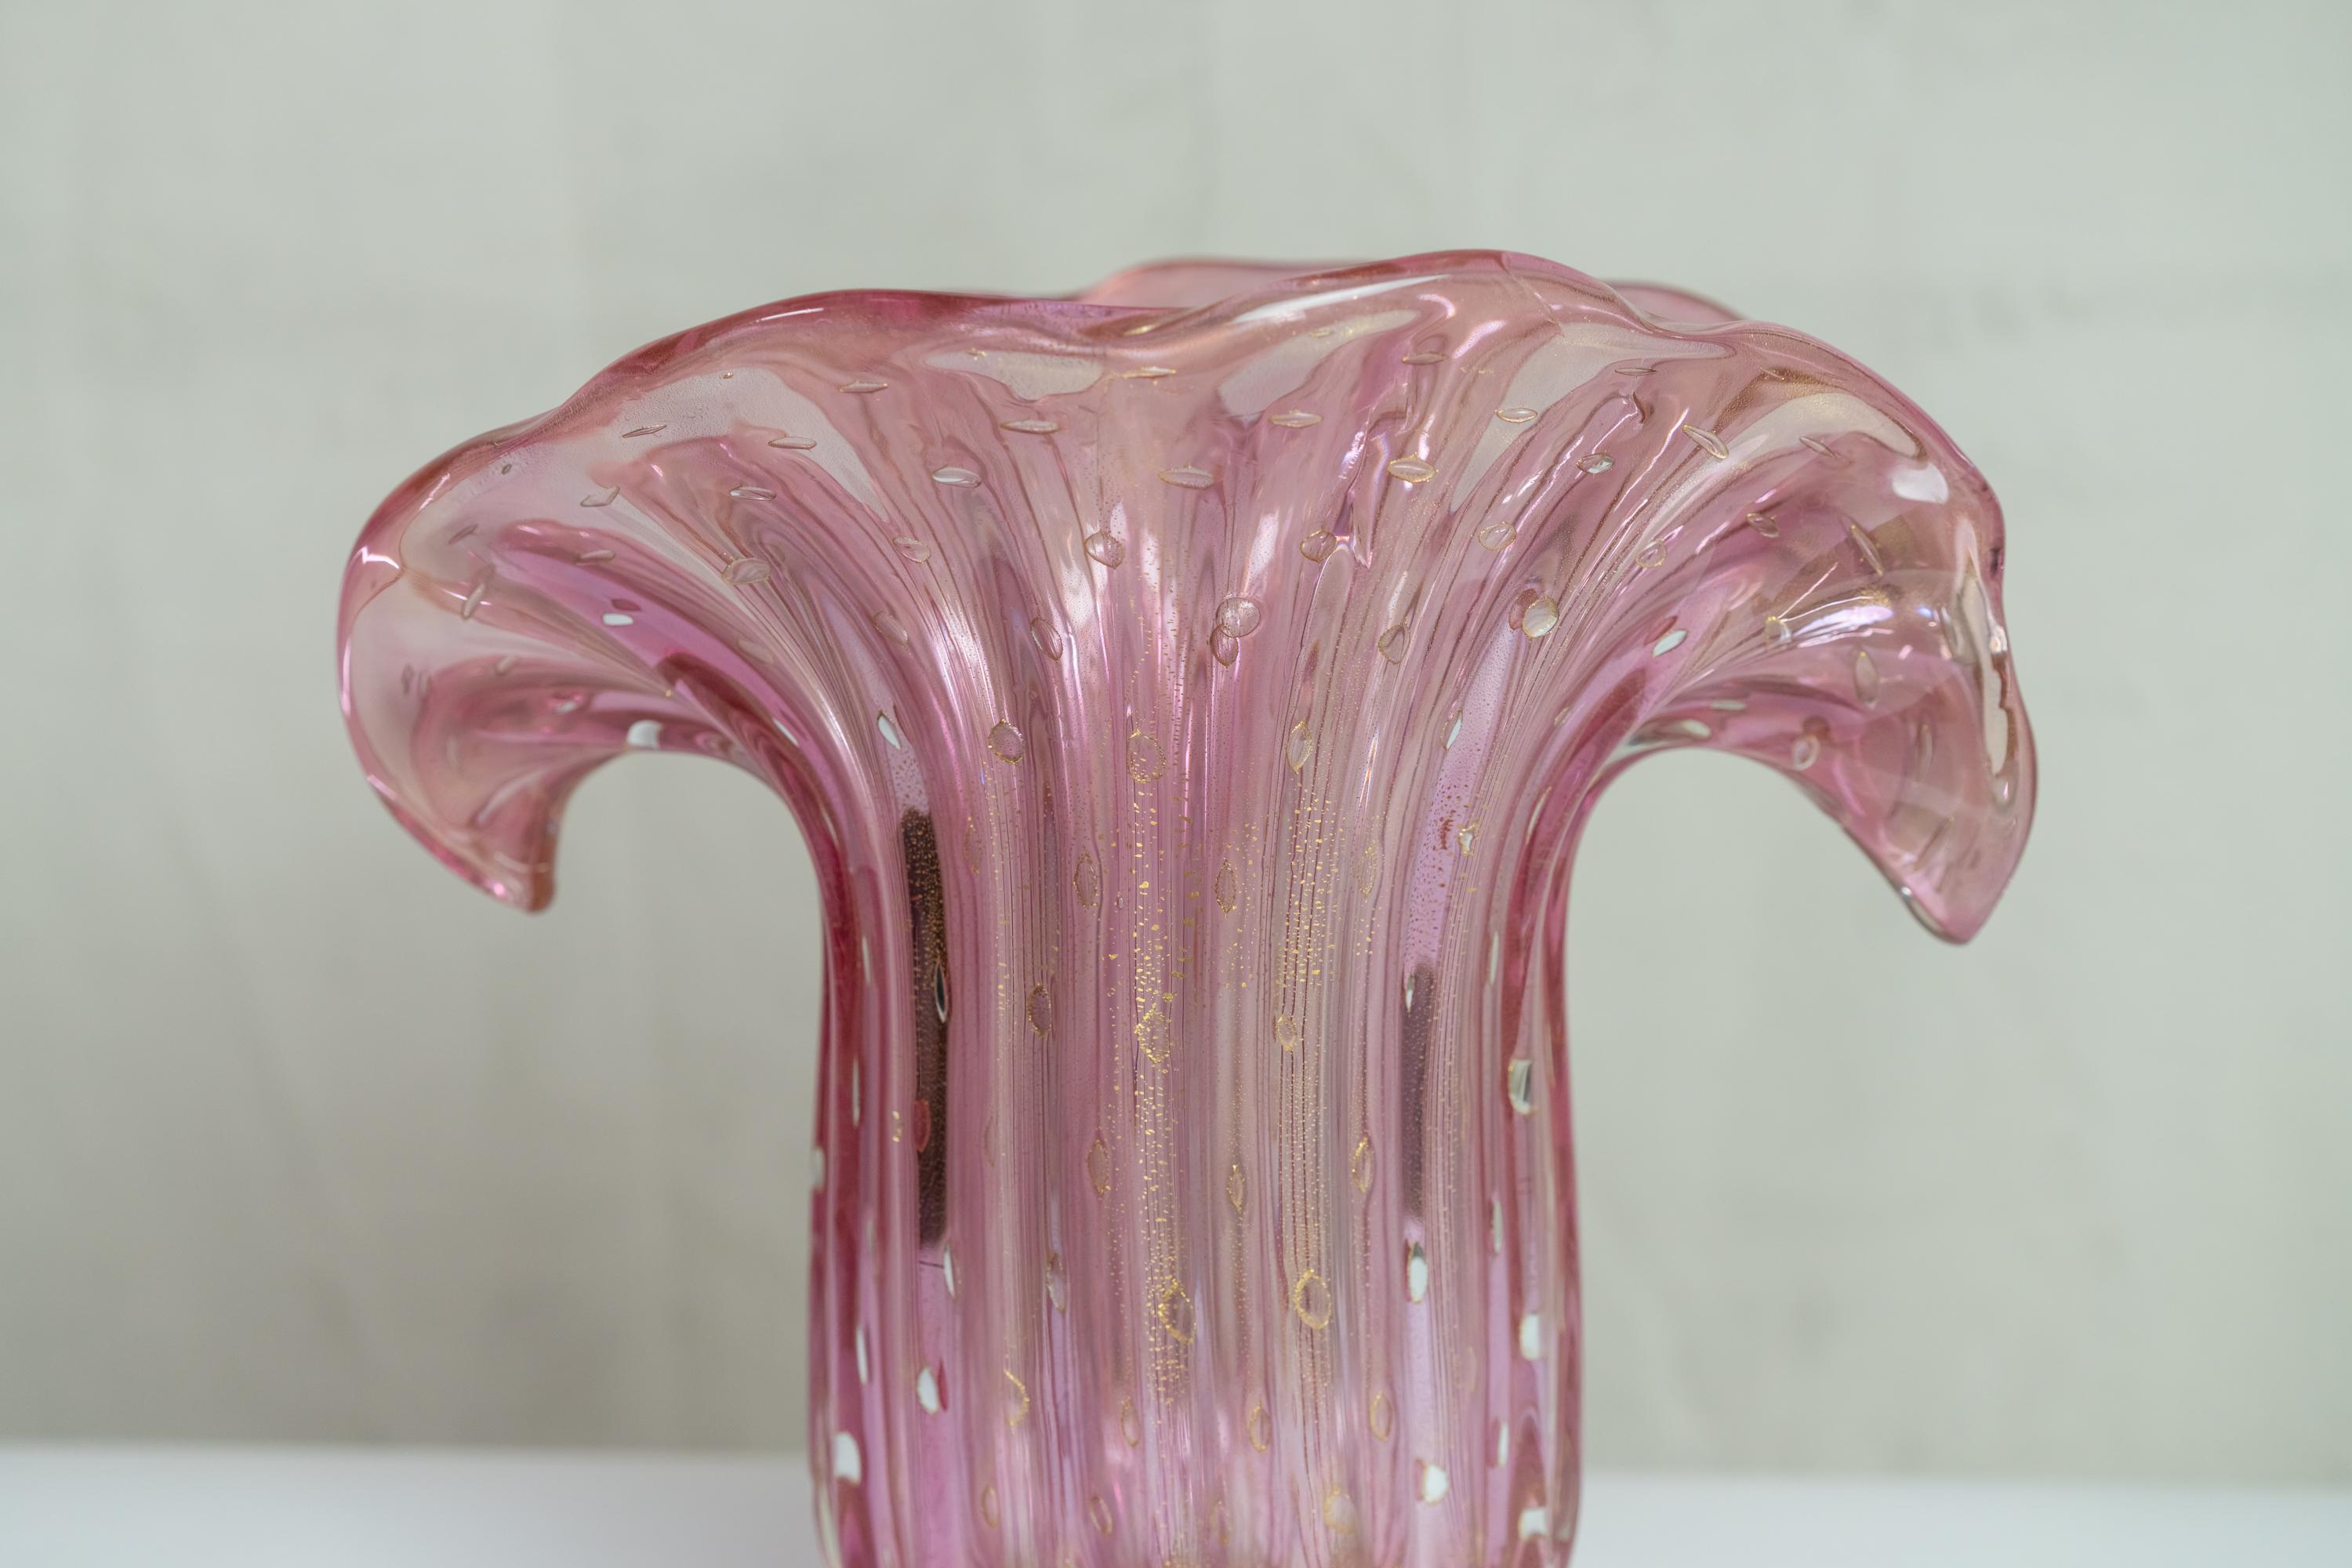 pink glass vase large